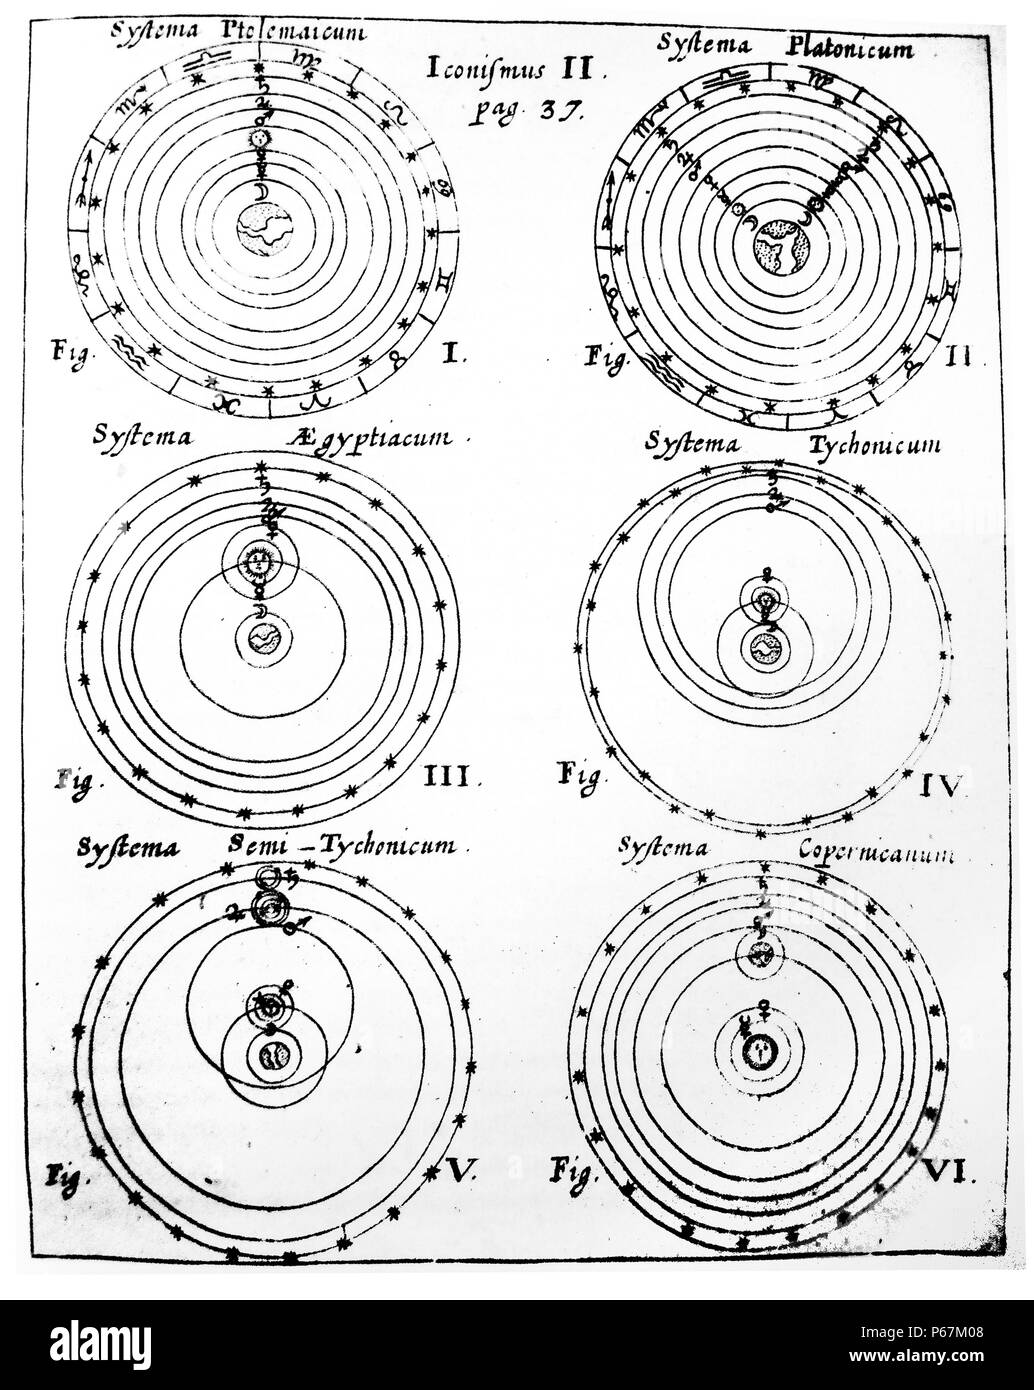 Sistemi cosmica da Tolomeo a Copernico. Datata xviii secolo Foto Stock